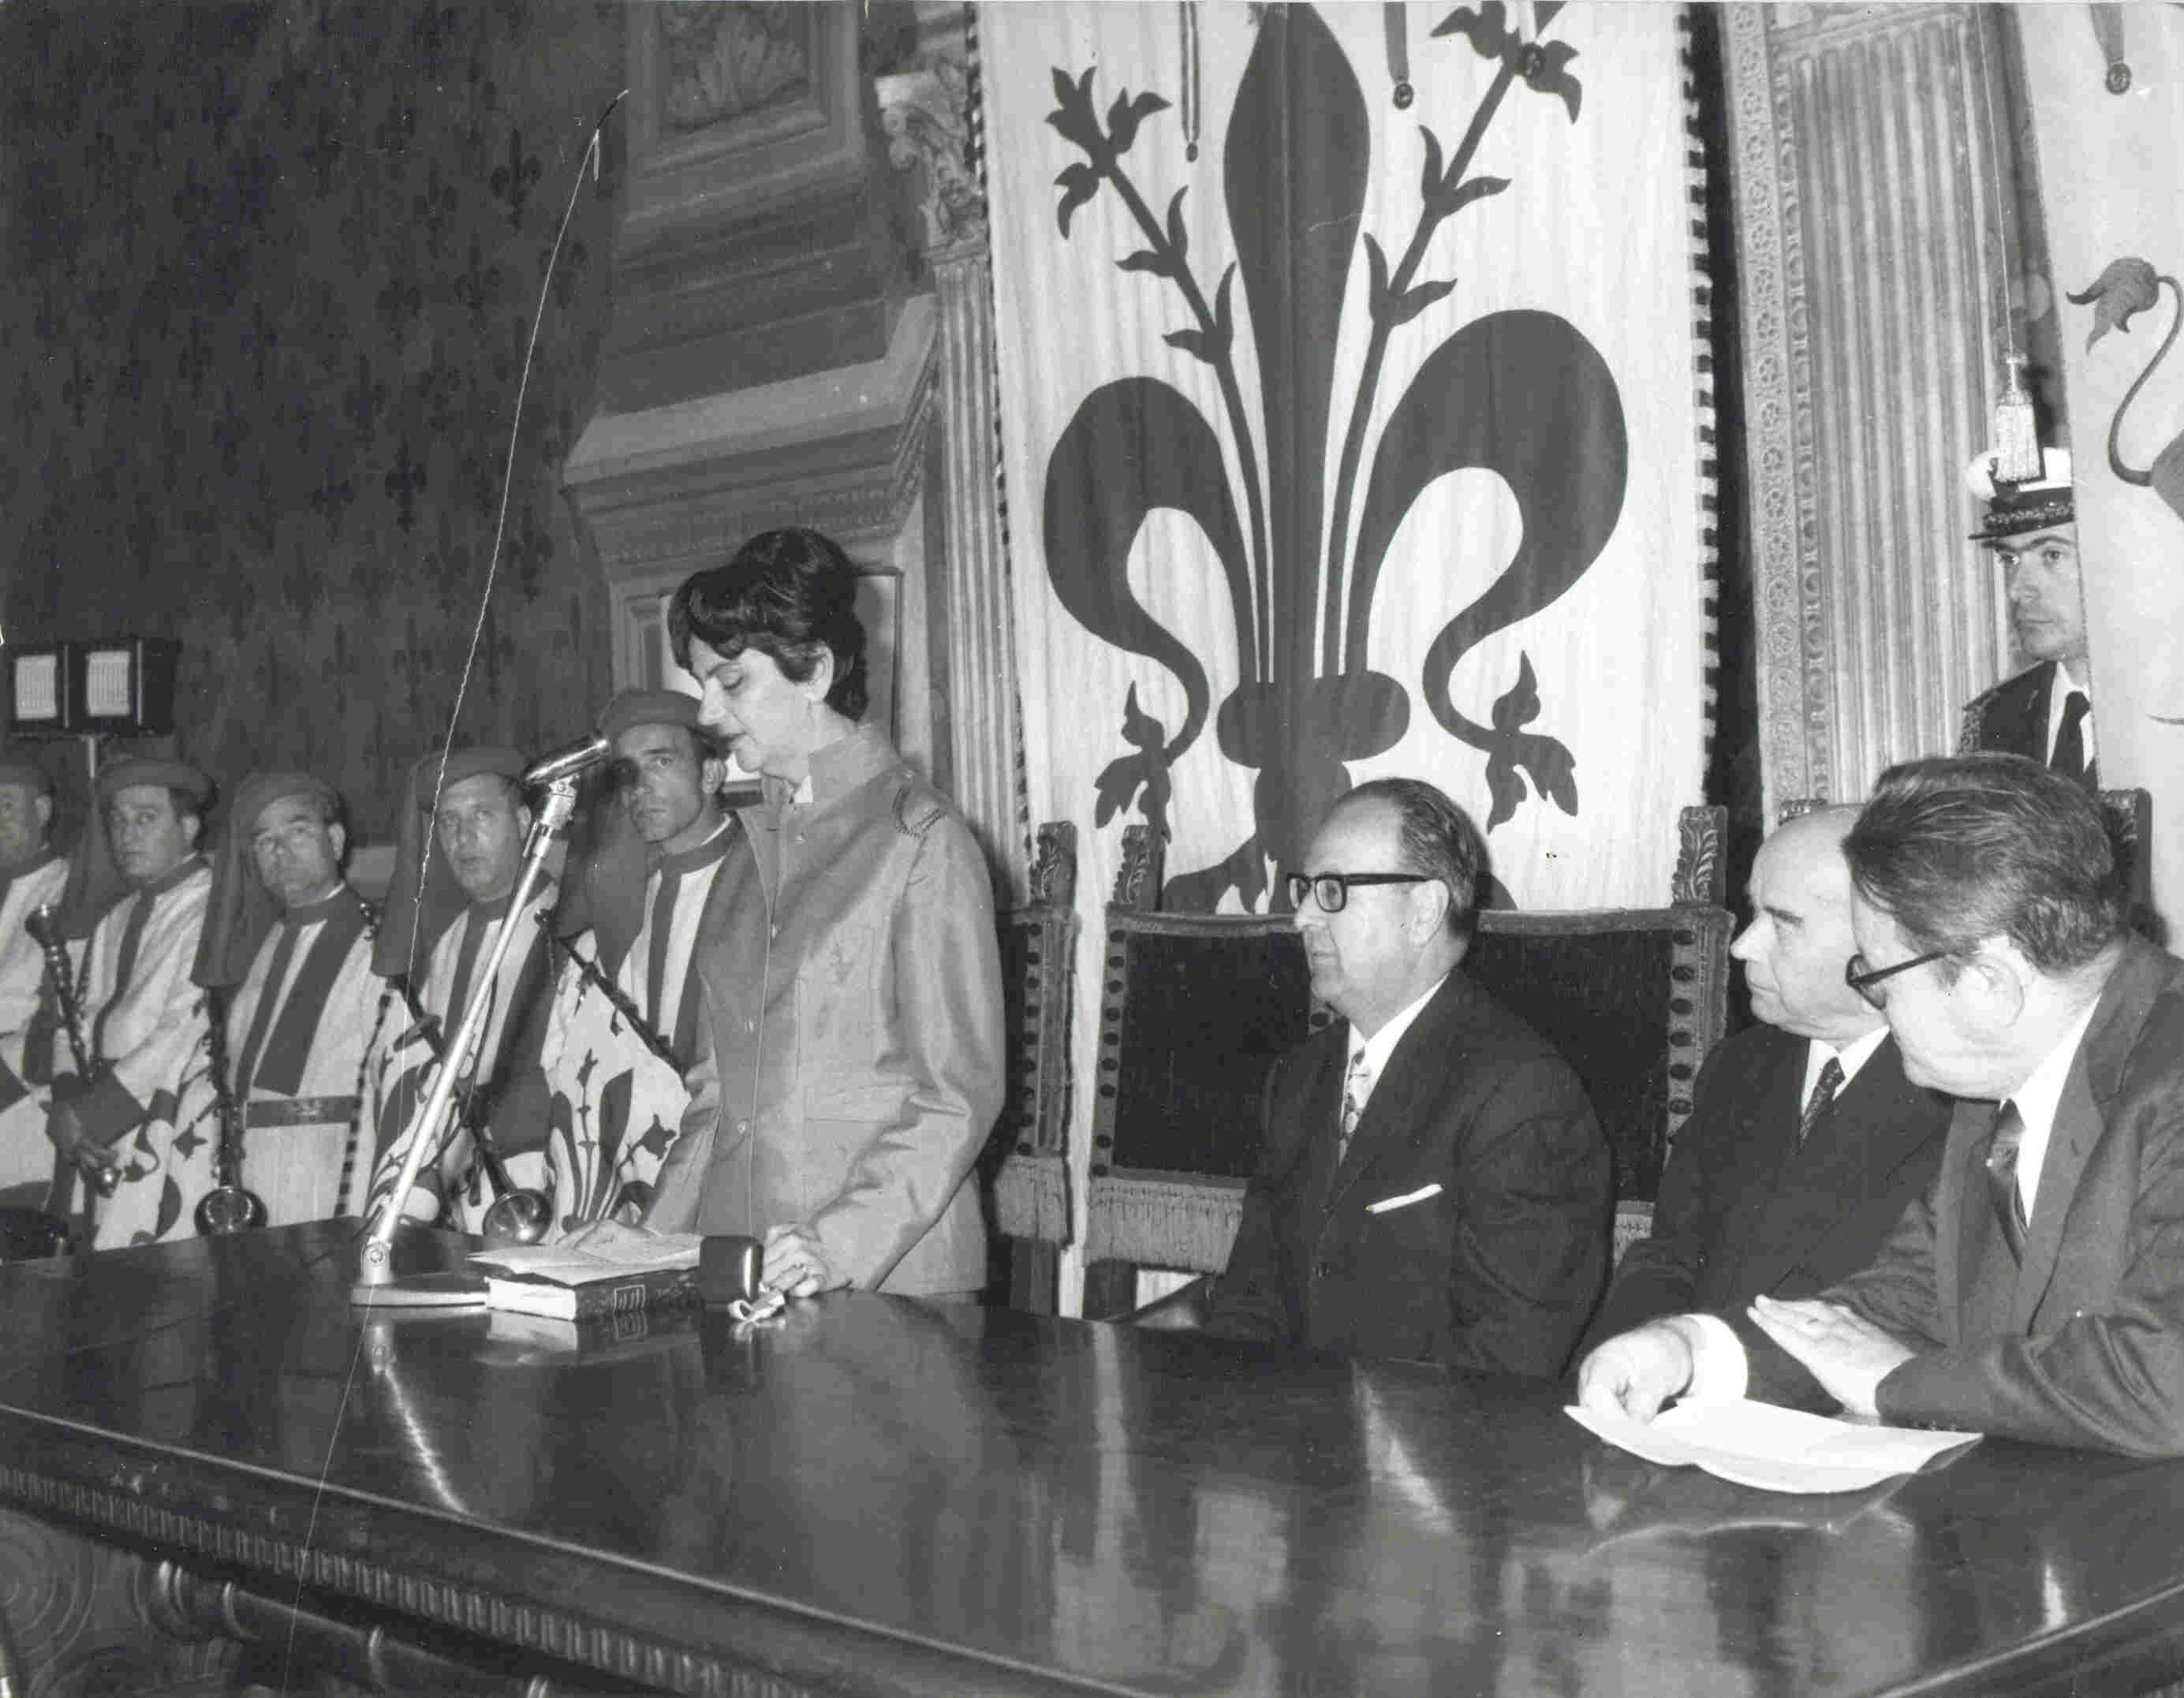 Medaglia d,oro della Unione Fiorentina 
conferito alla signora Eta Boeriu
per la traduzione della "Divina Commedia"
Firenze - Palazzo Vecchio
24 maggio 1970